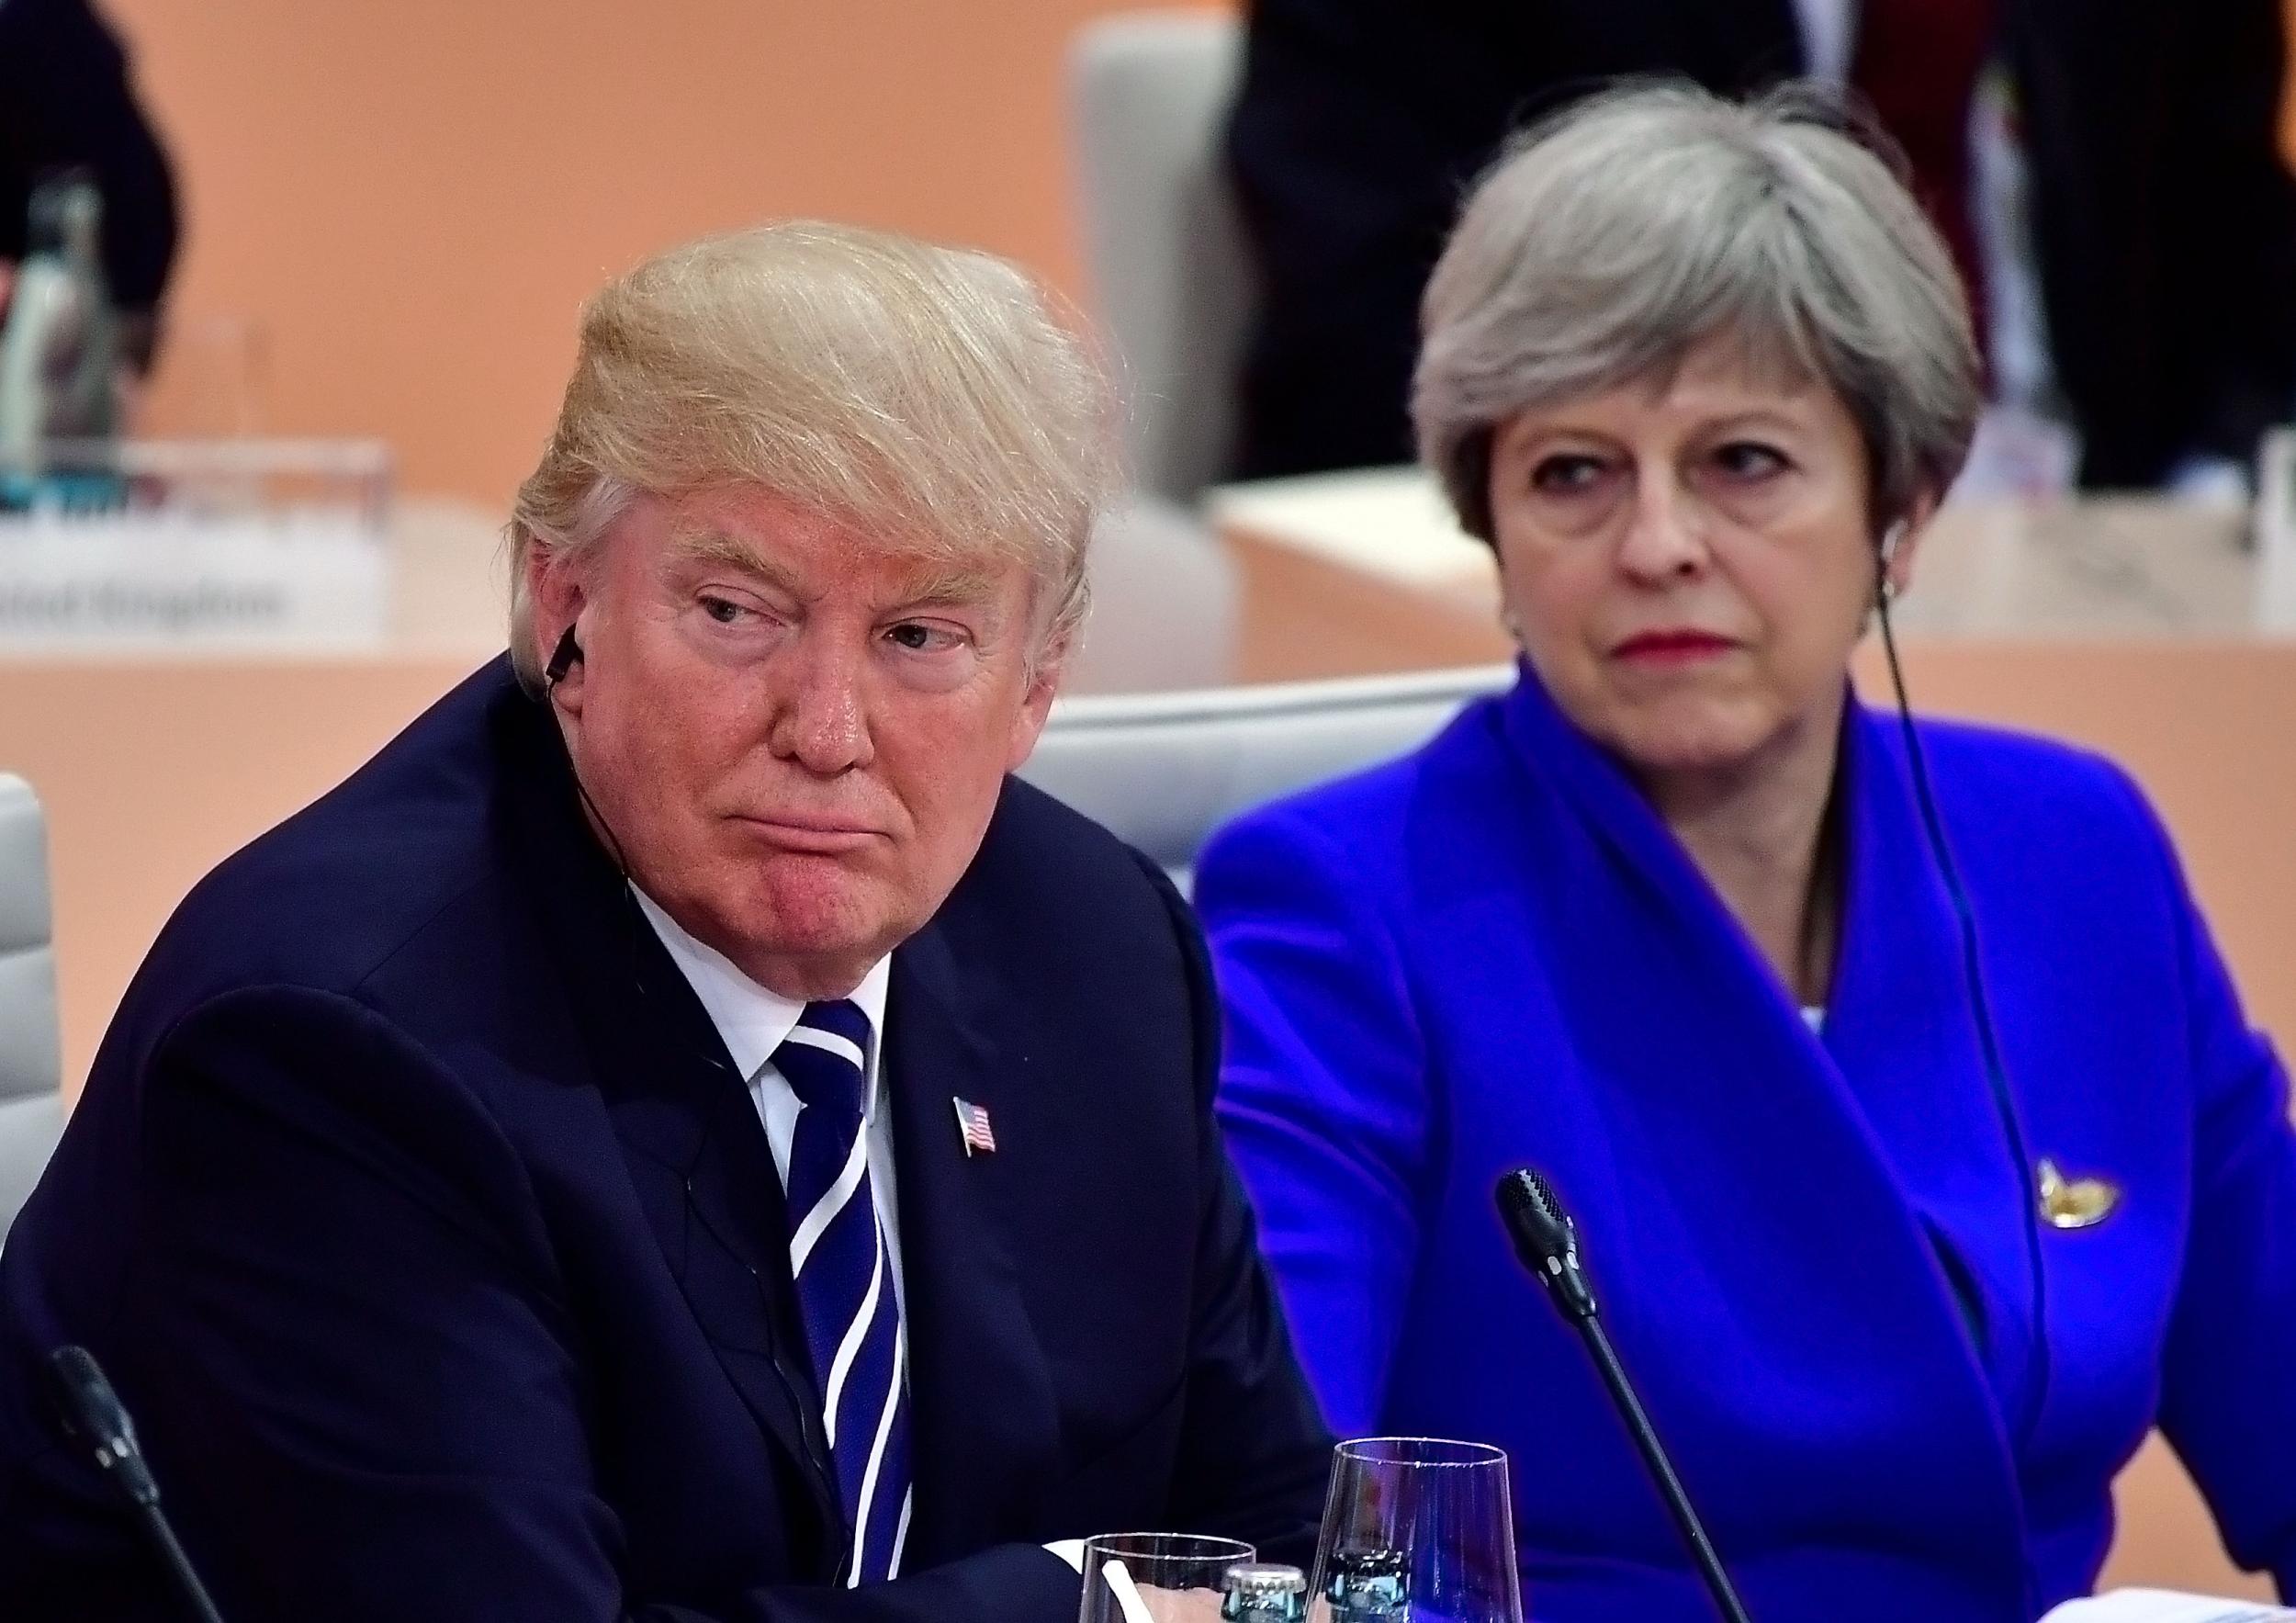 Donald Trump and Theresa May at last weekend's G20 summit in Hamburg